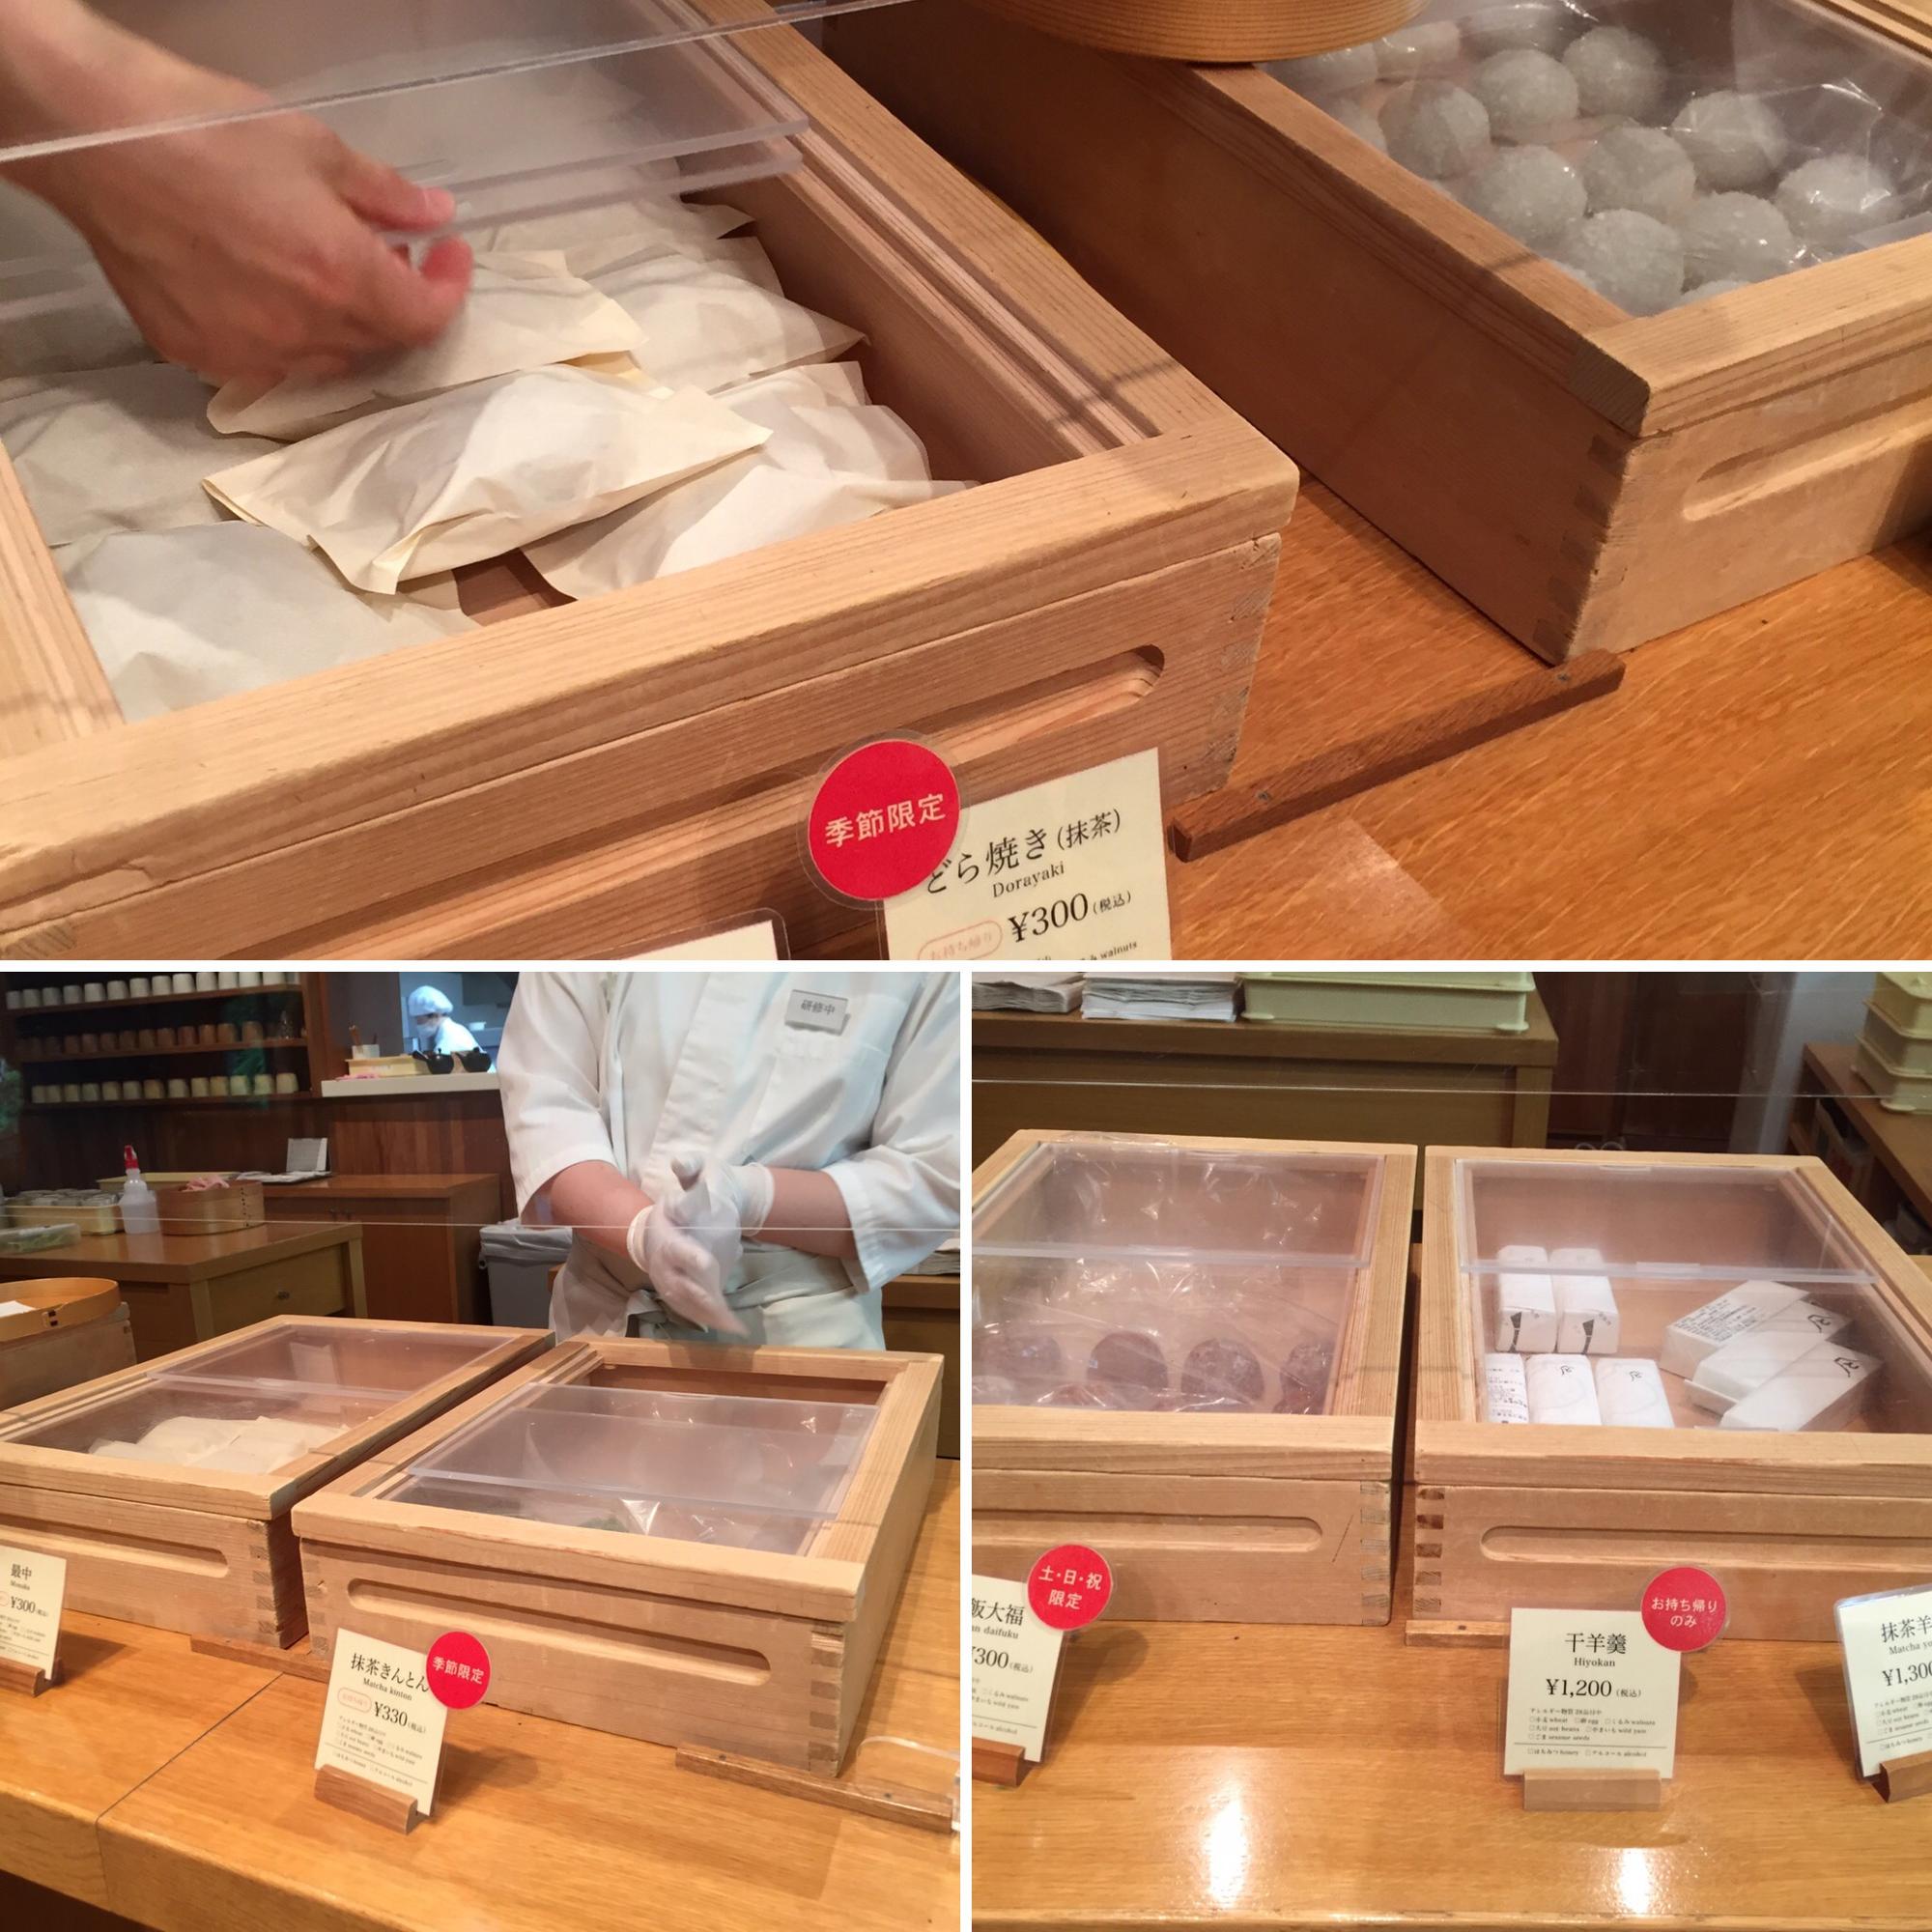 さわらの木箱は昔ならではの和菓子屋さんの雰囲気です。